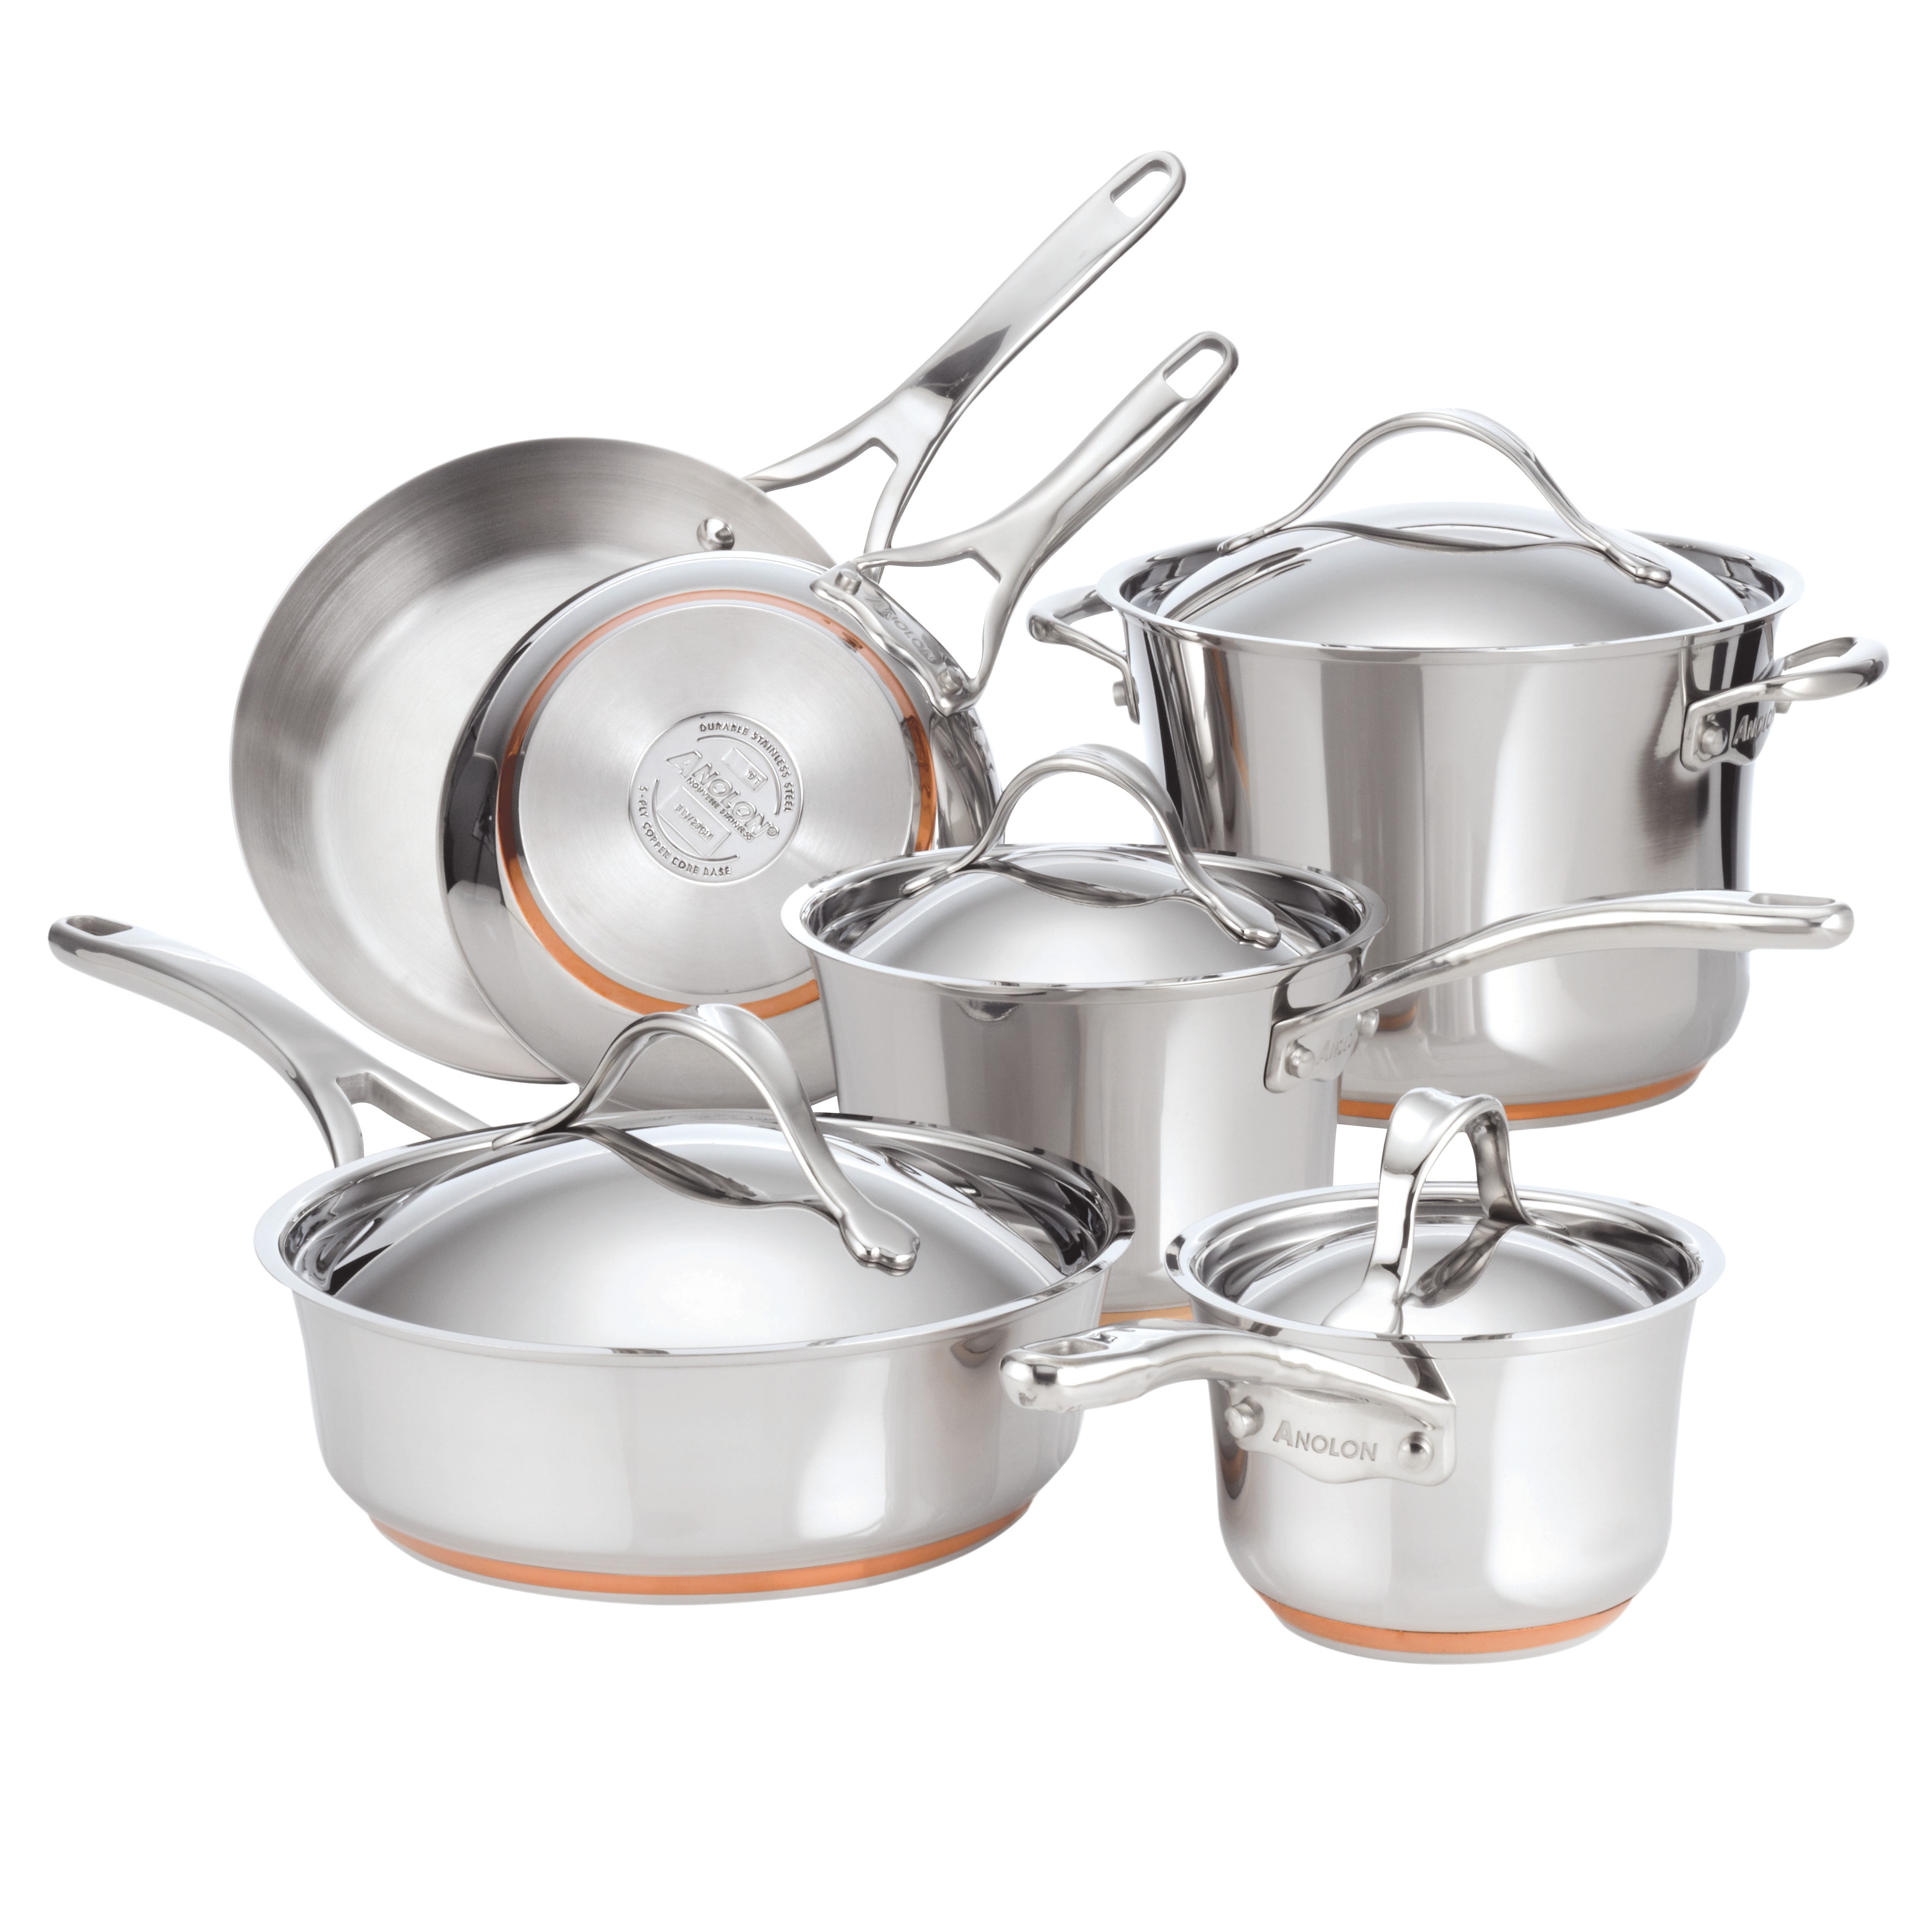 Paula Deen 11-piece Stainless Steel & Copper Cookware Set 